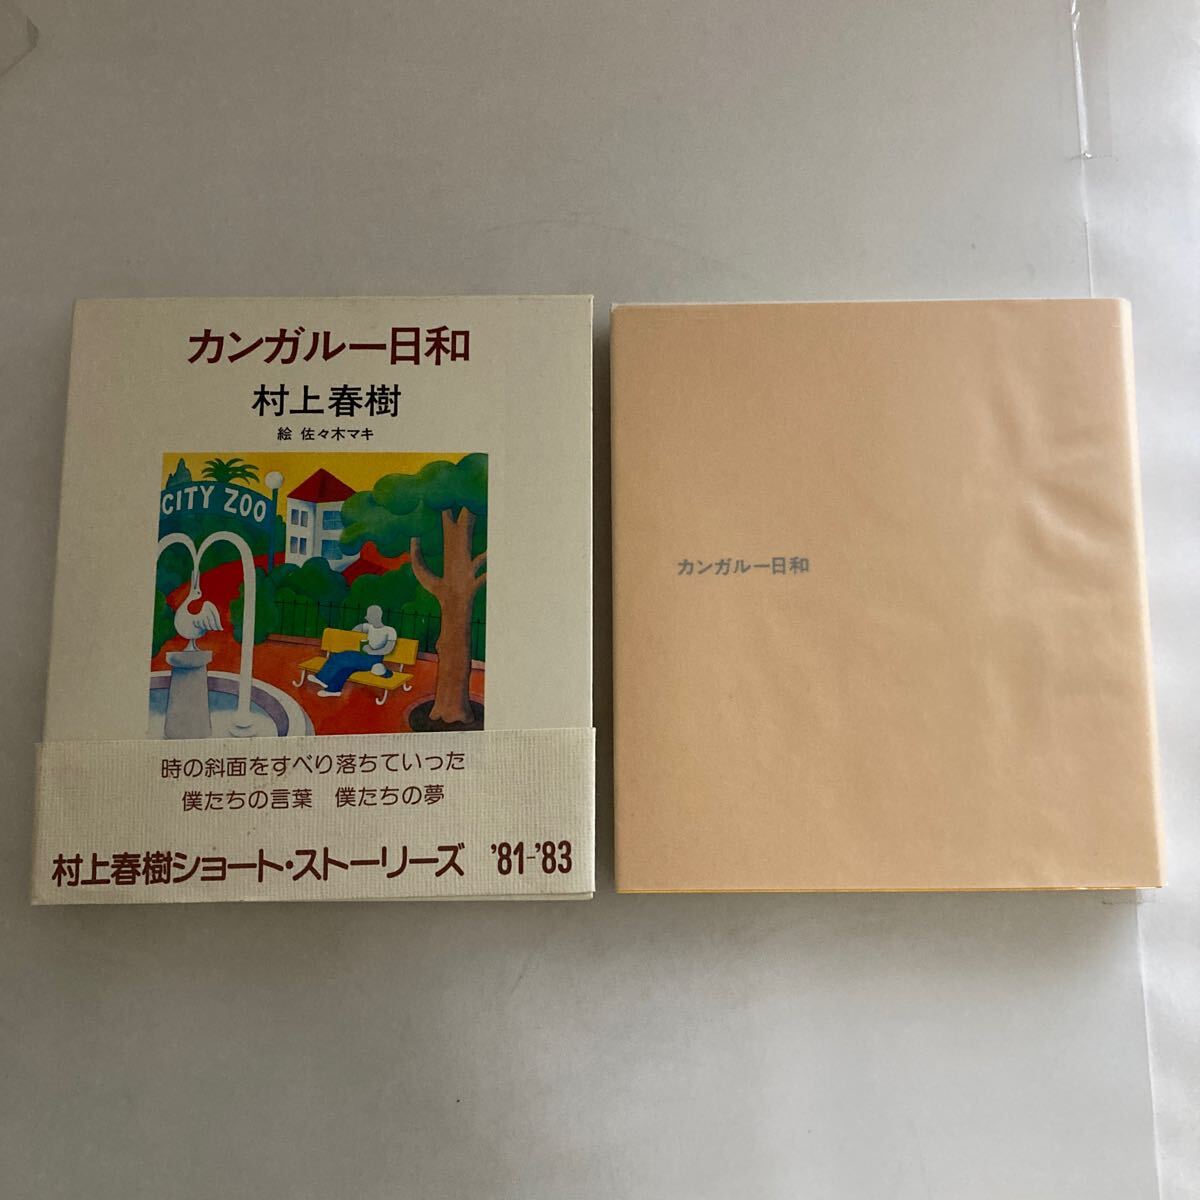 ◇ カンガルー日和 村上春樹 ショート・ストーリーズ '81-'83 初版 帯付♪GM16の画像1